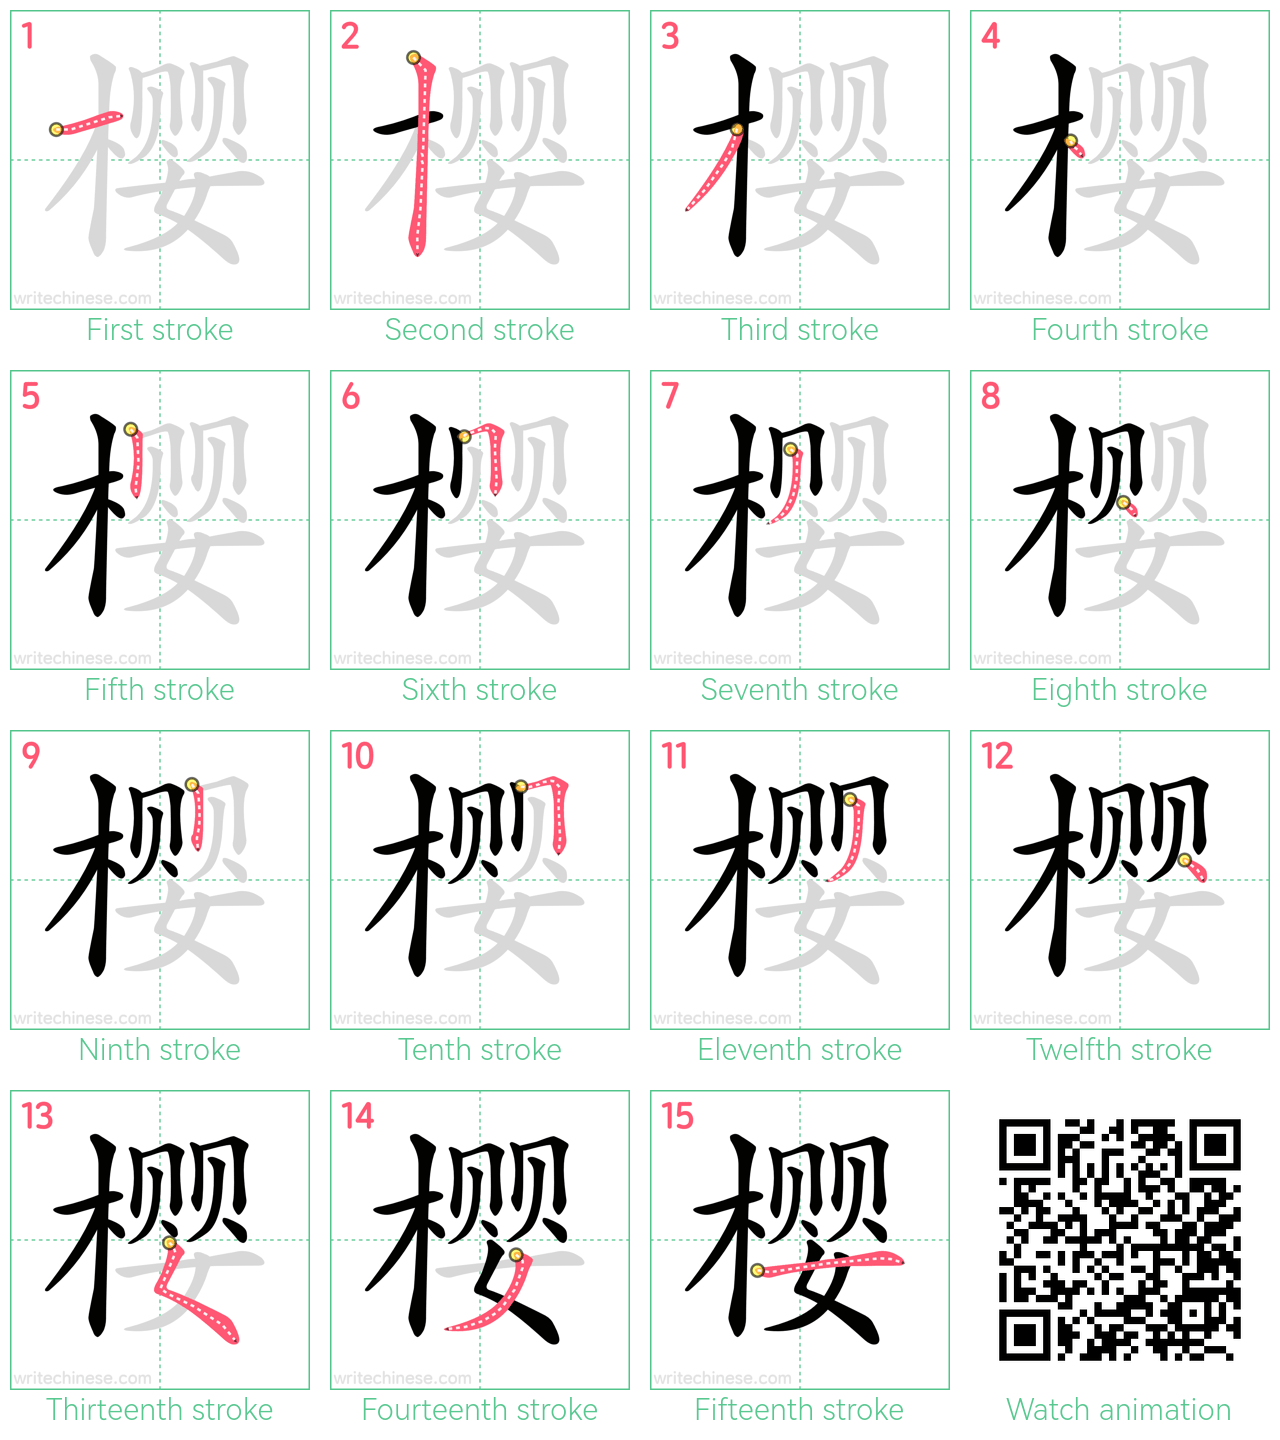 樱 step-by-step stroke order diagrams